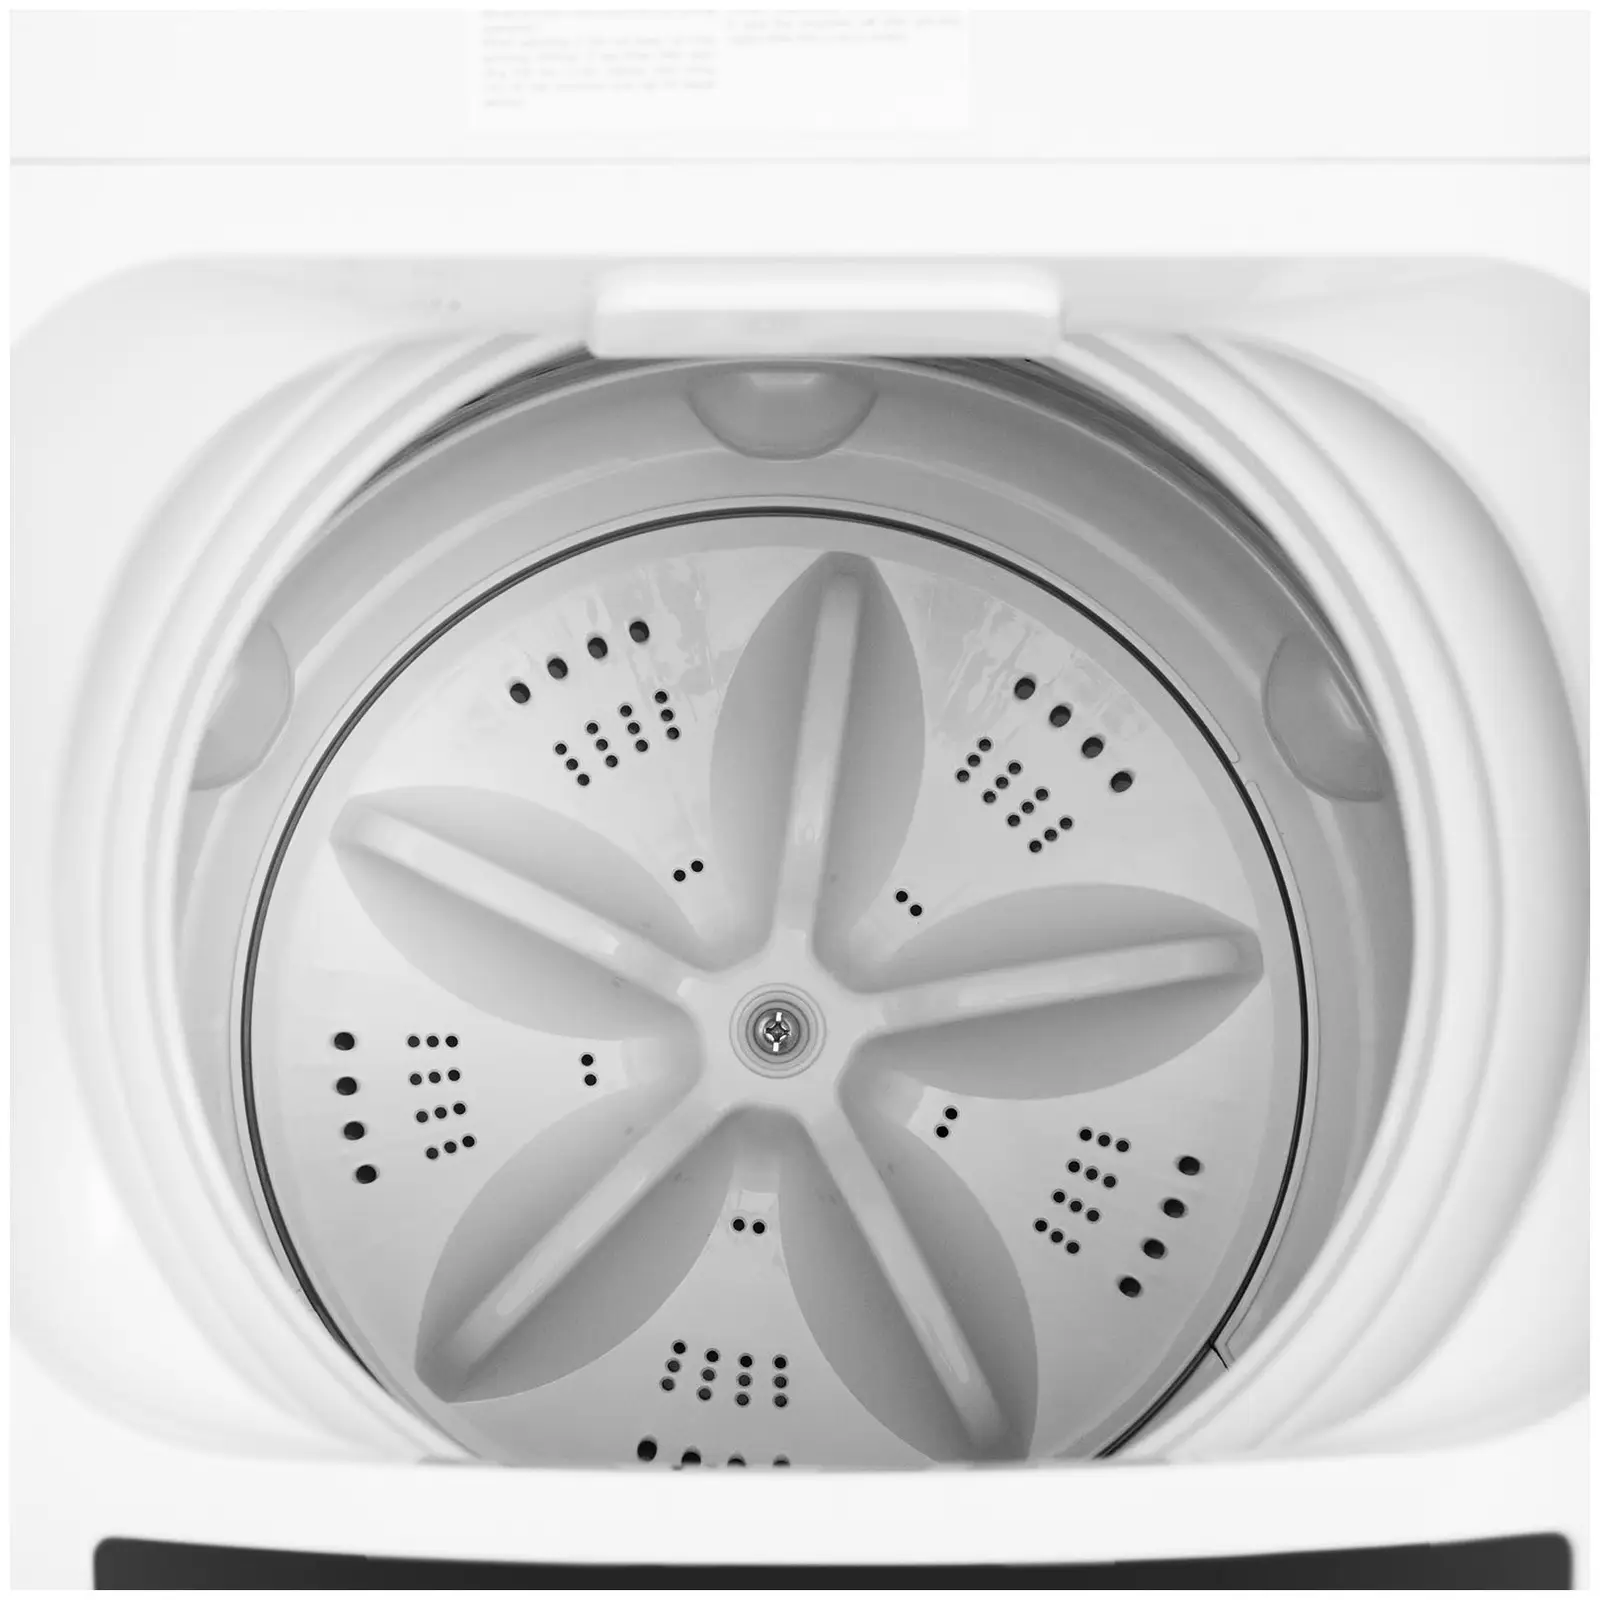 Mini práčka - plne automatická - 4.5 kg - 300 W